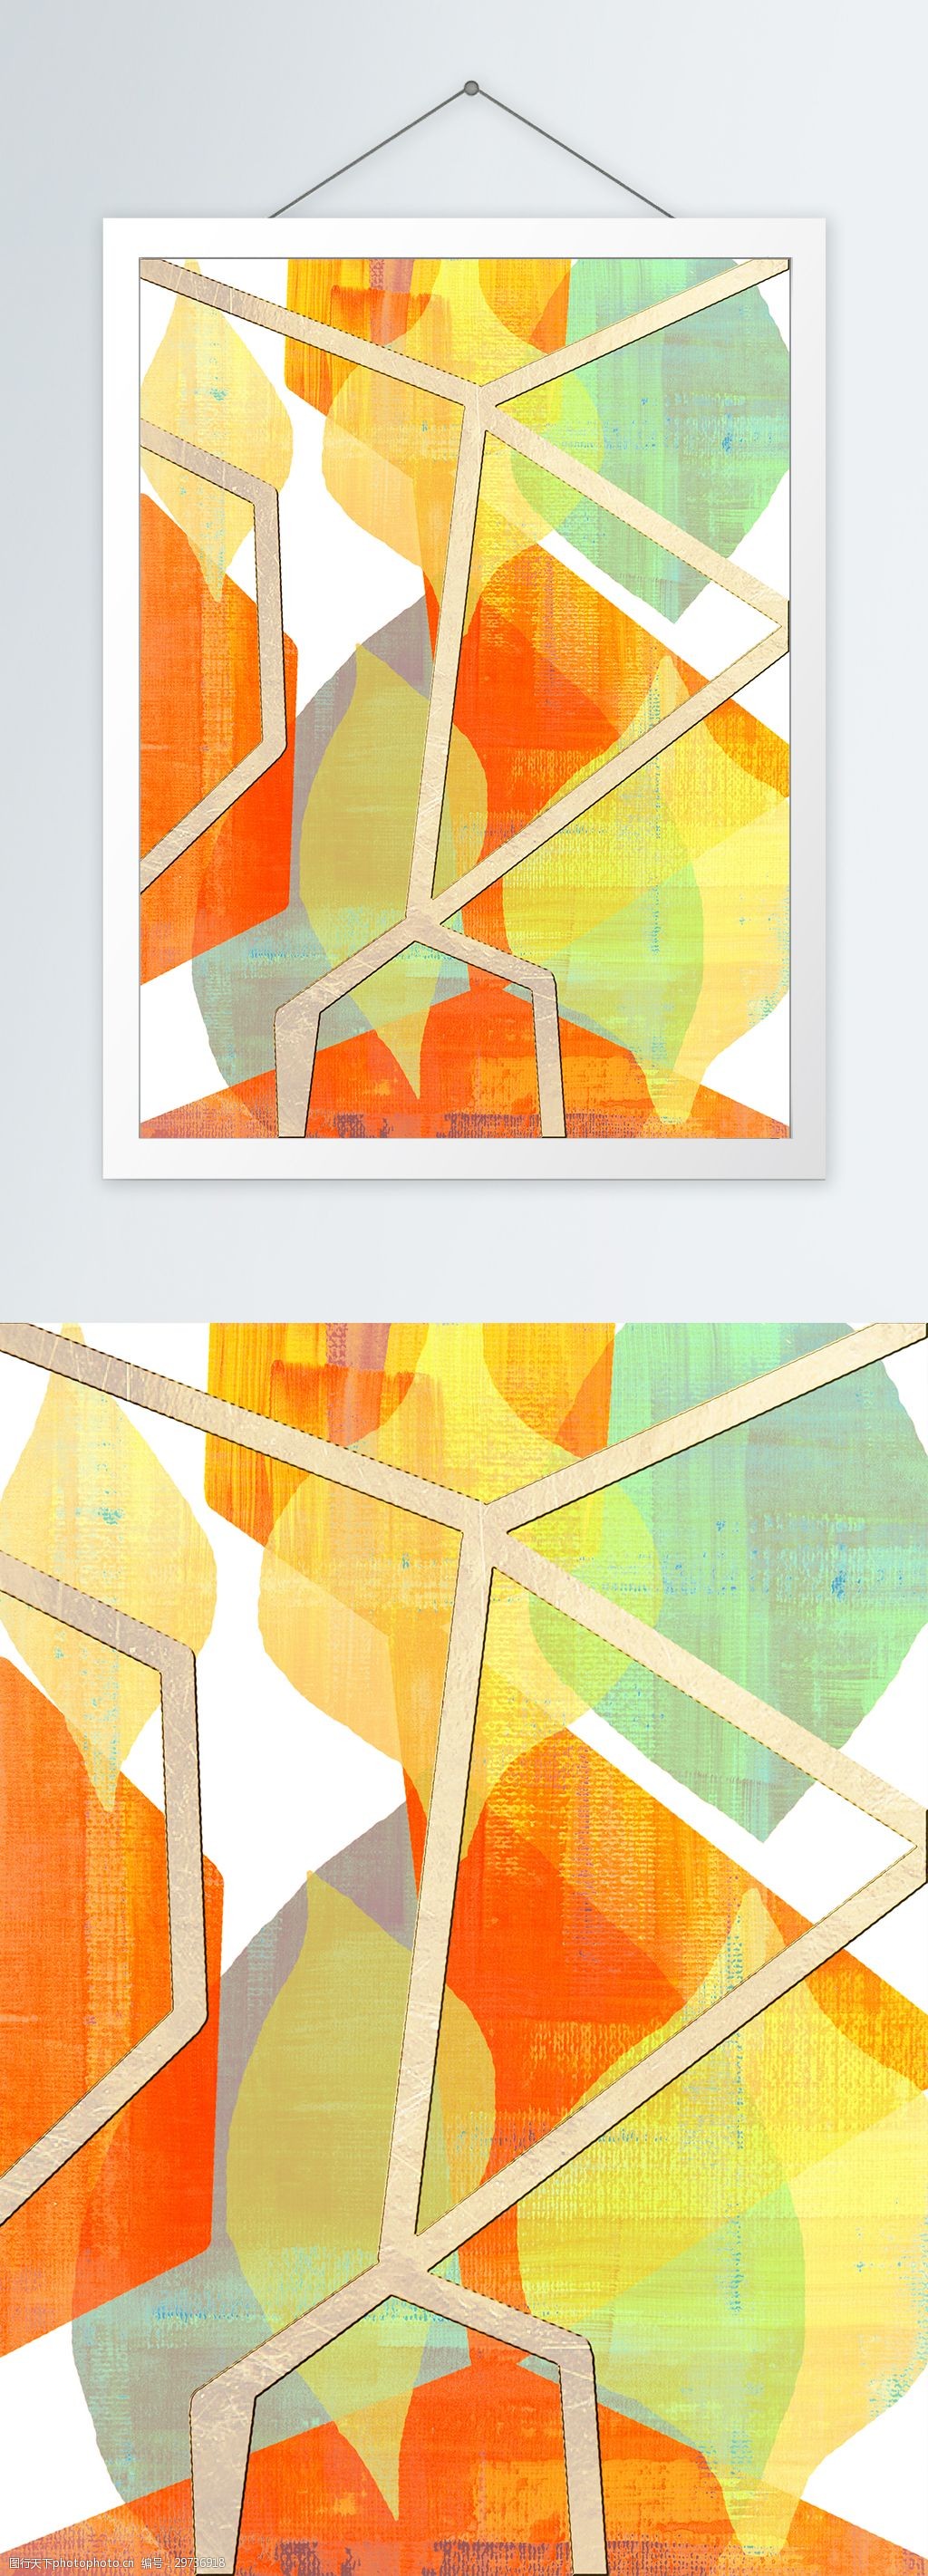 关键词:现代简约橘色叠加色块客厅装饰画 客厅装饰画 创意几何 一联画